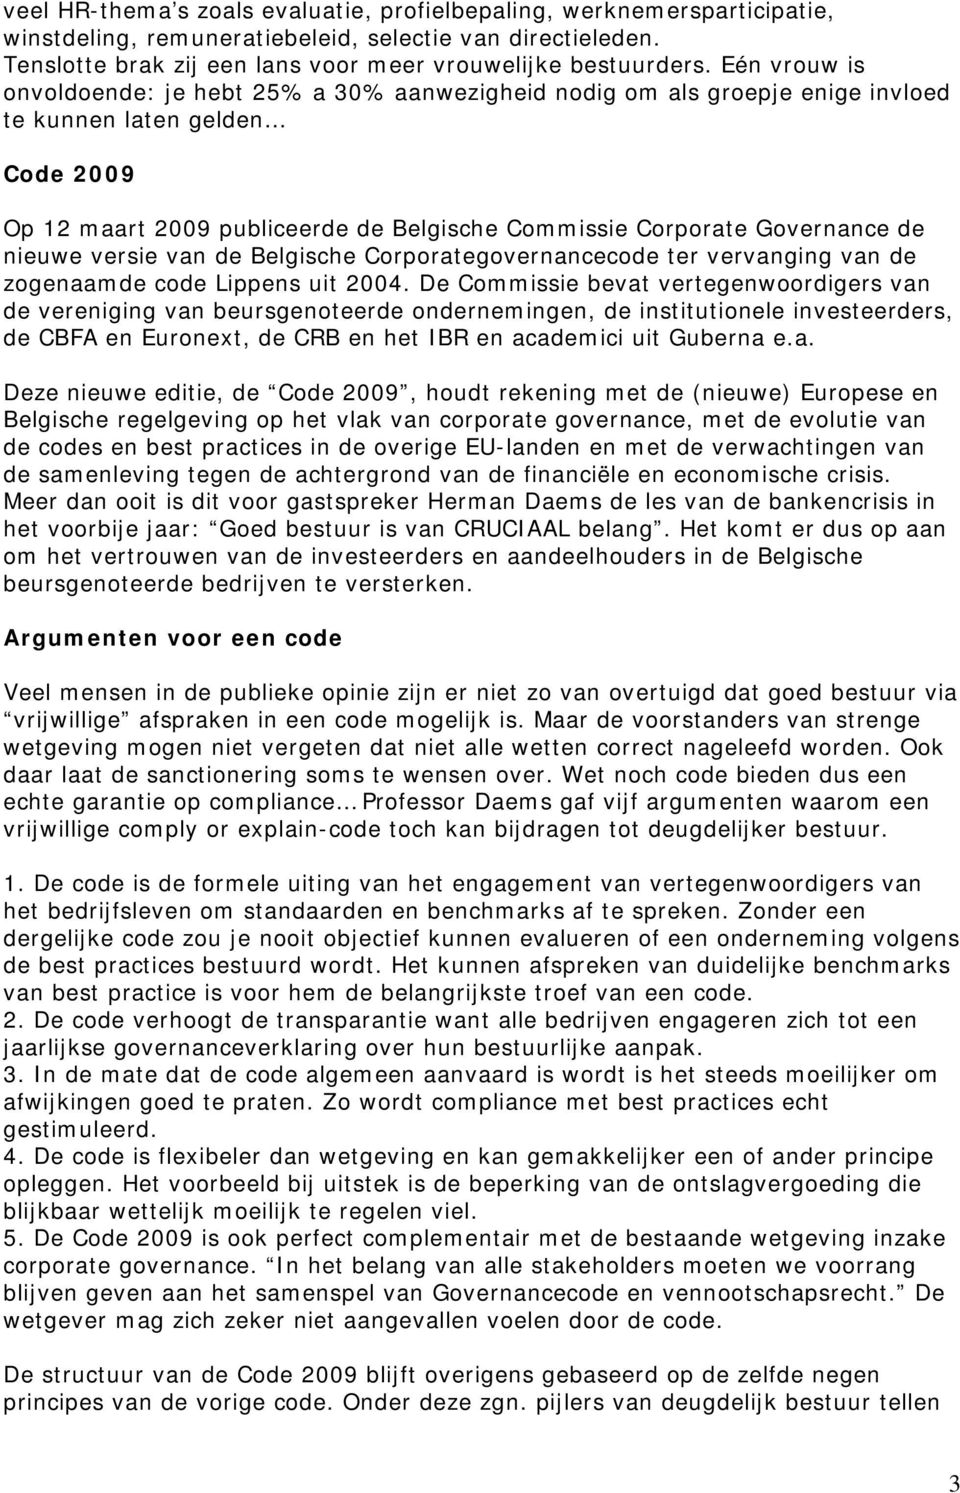 de nieuwe versie van de Belgische Corporategovernancecode ter vervanging van de zogenaamde code Lippens uit 2004.